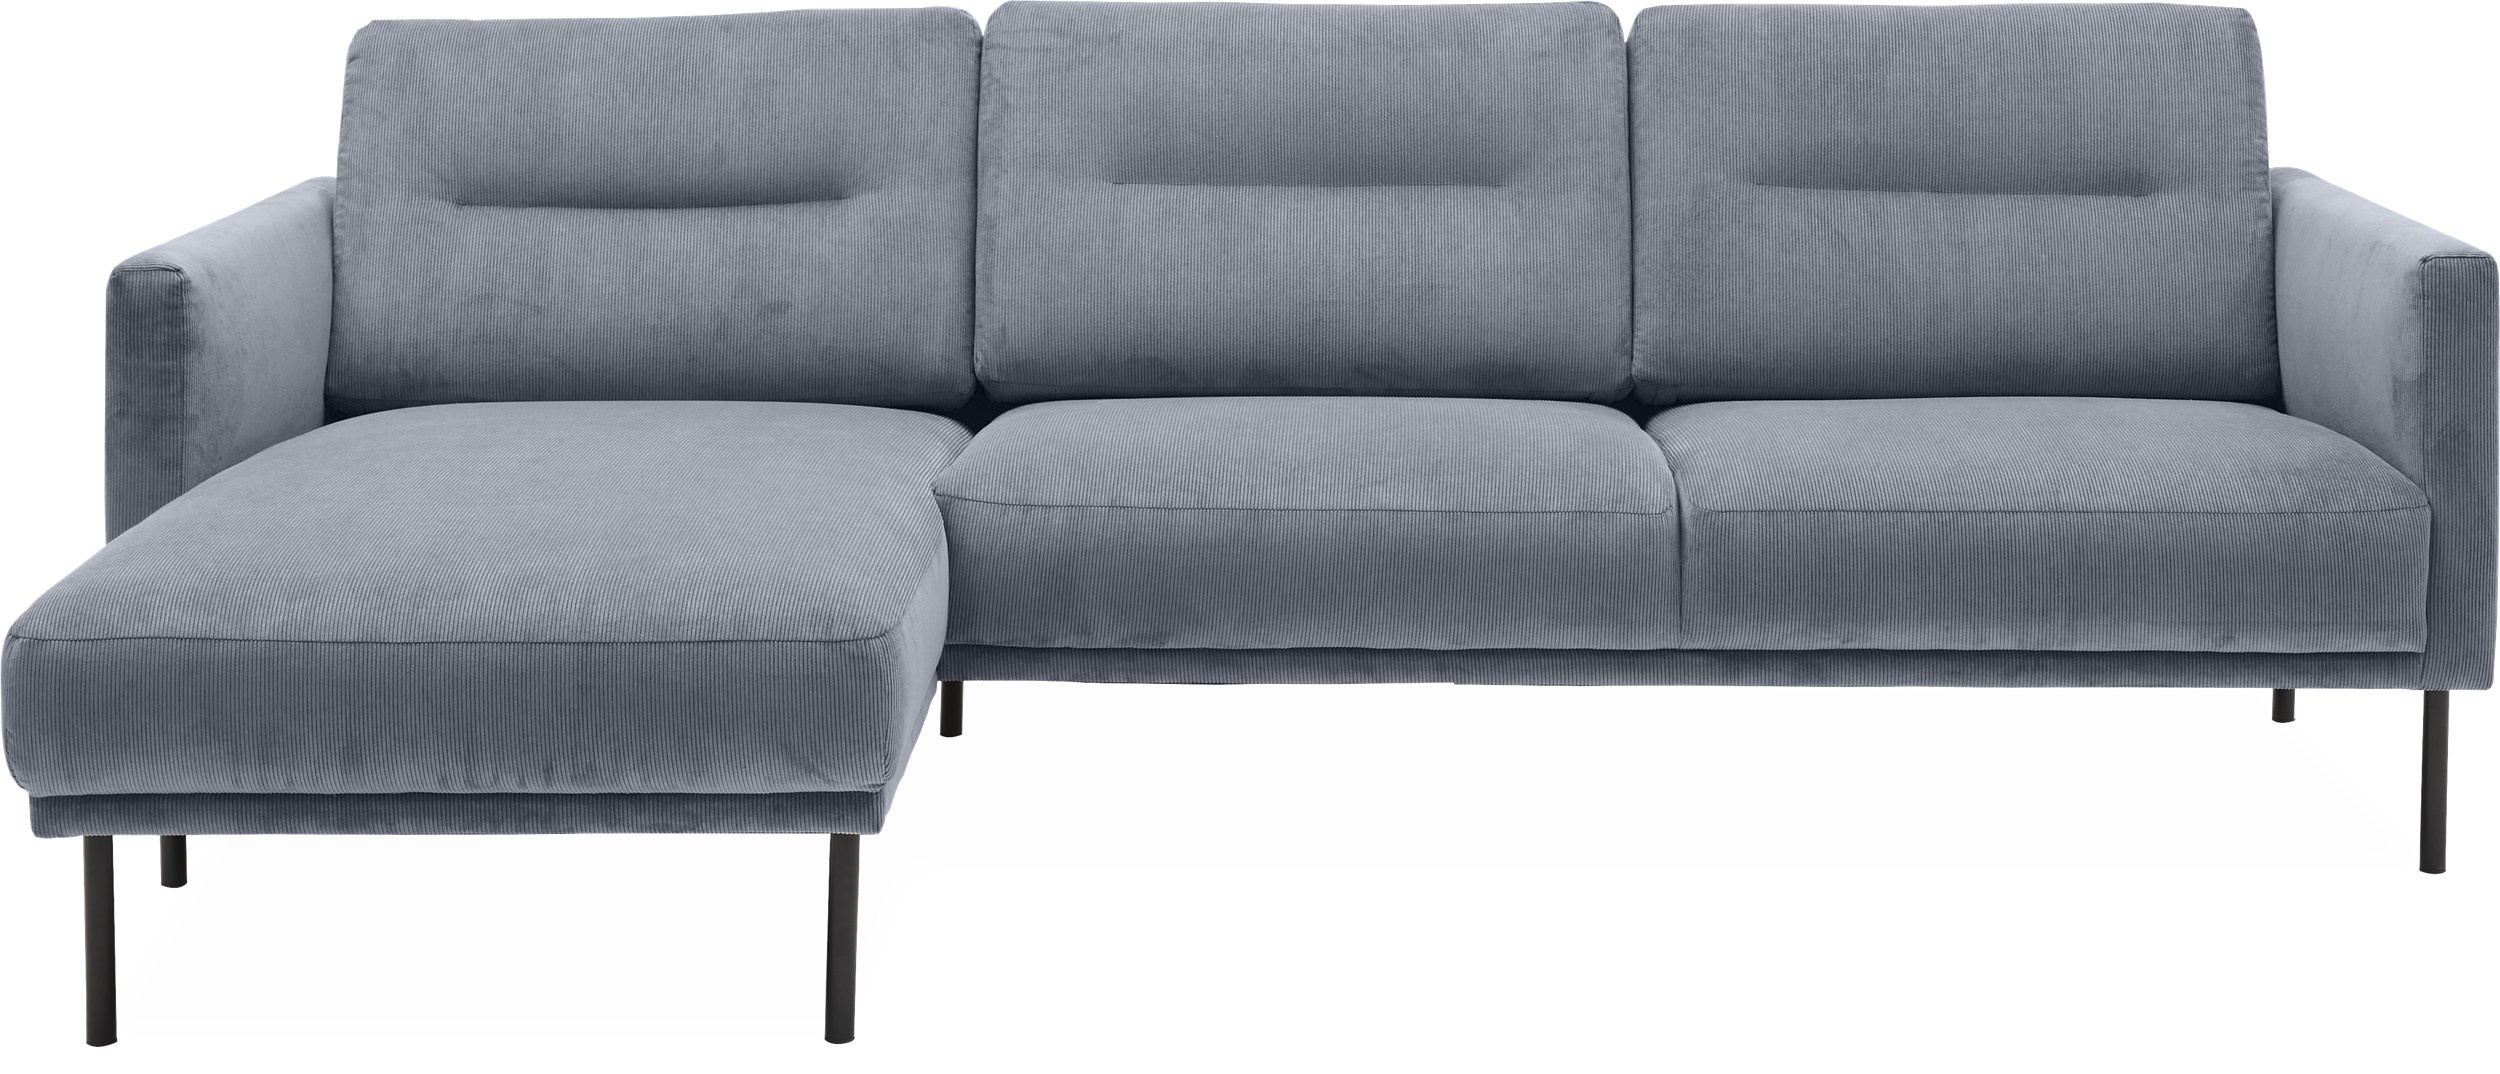 Larvik venstrevendt sofa med chaiselong - Wave 40 Slate grey stof og ben i sortlakeret metal